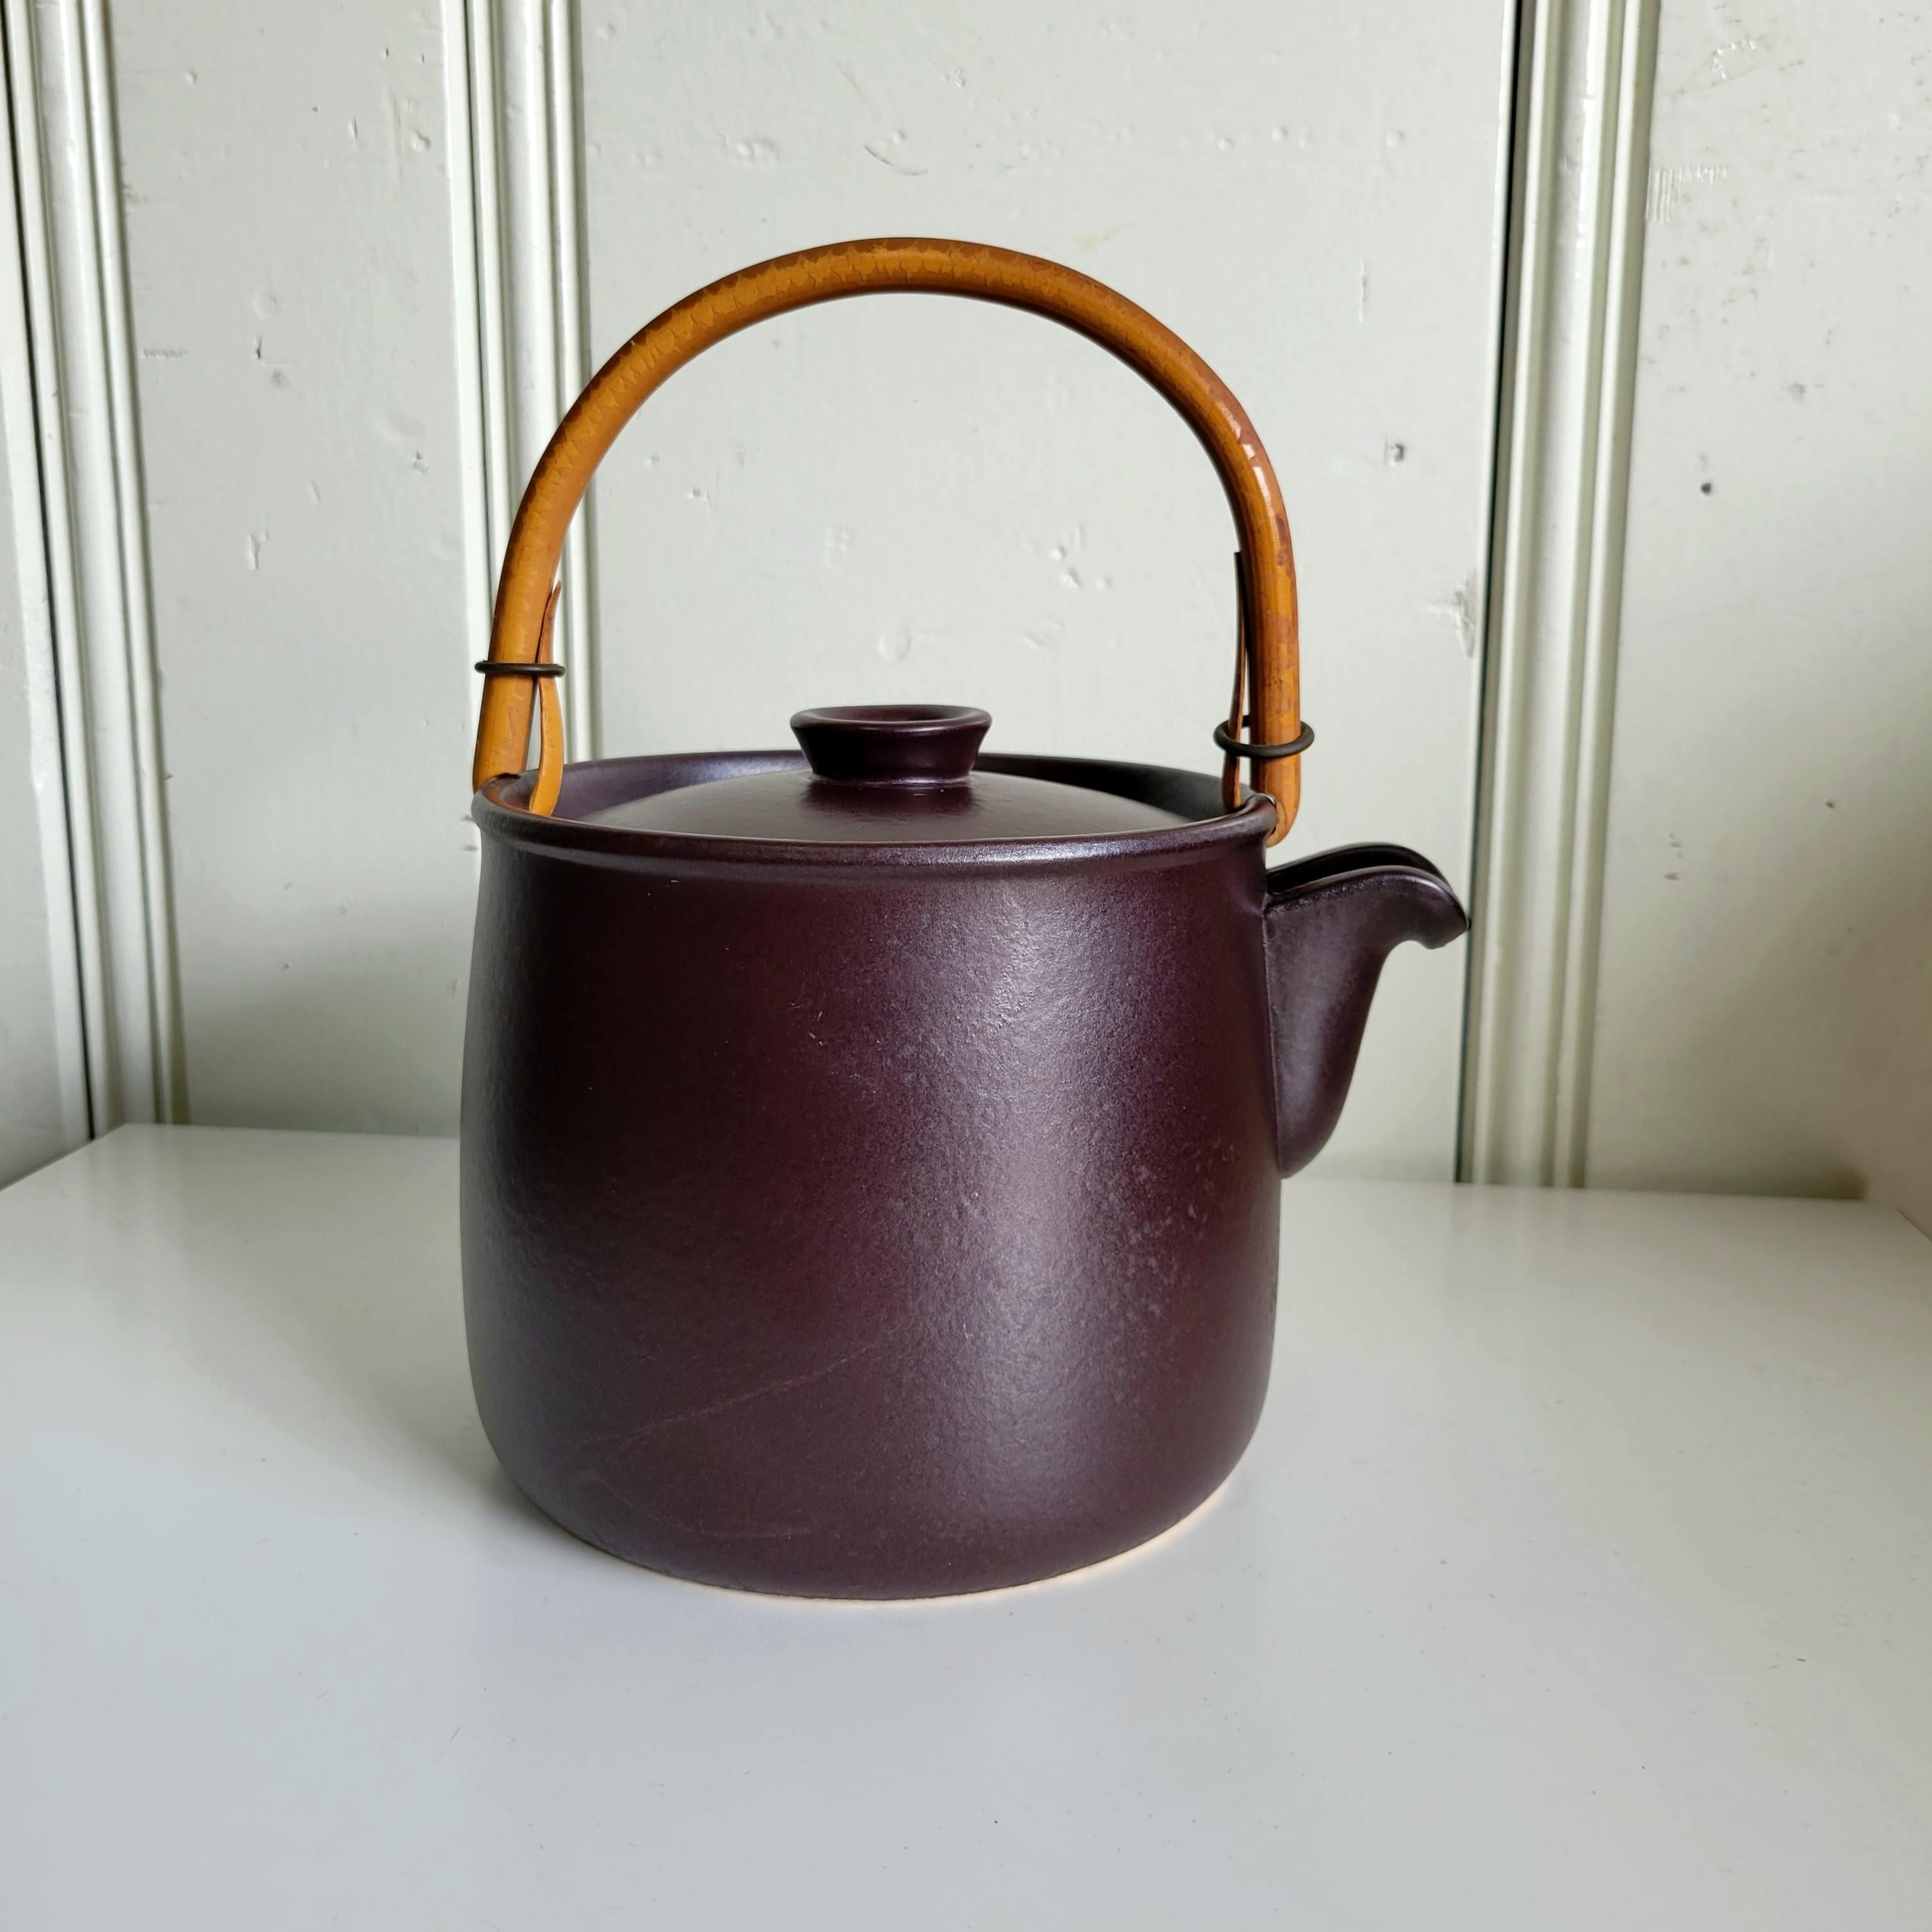 Stig Lindberg designed teapot for Gustavsberg, Sweden, circa 1960s.